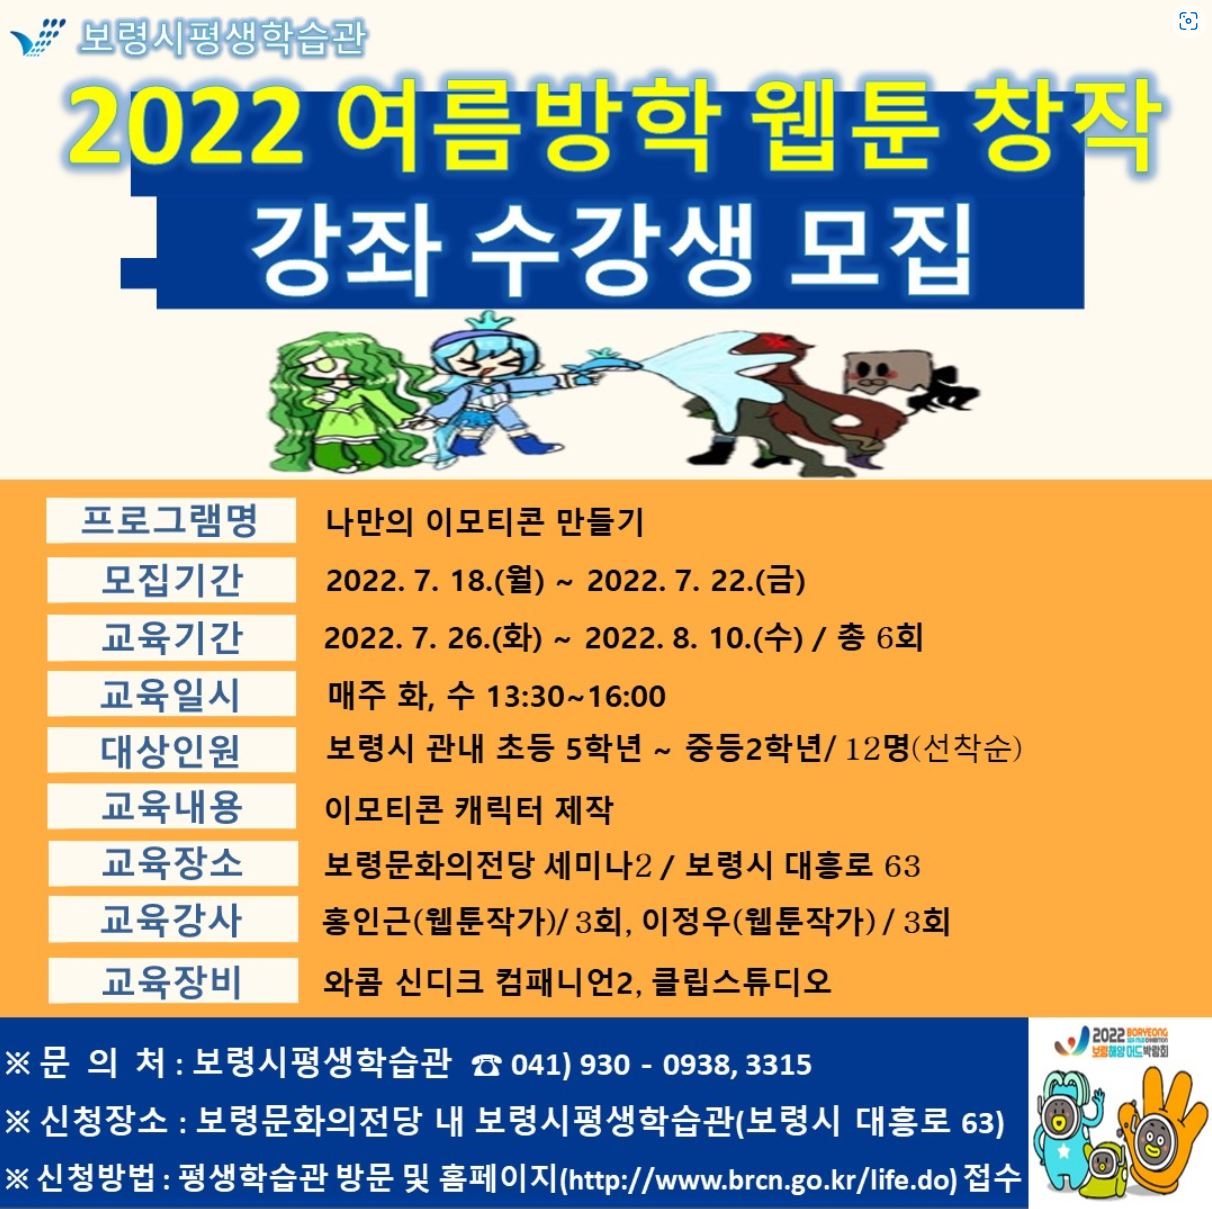 2022 여름방학 웹툰 창작 강좌 수강생 모집